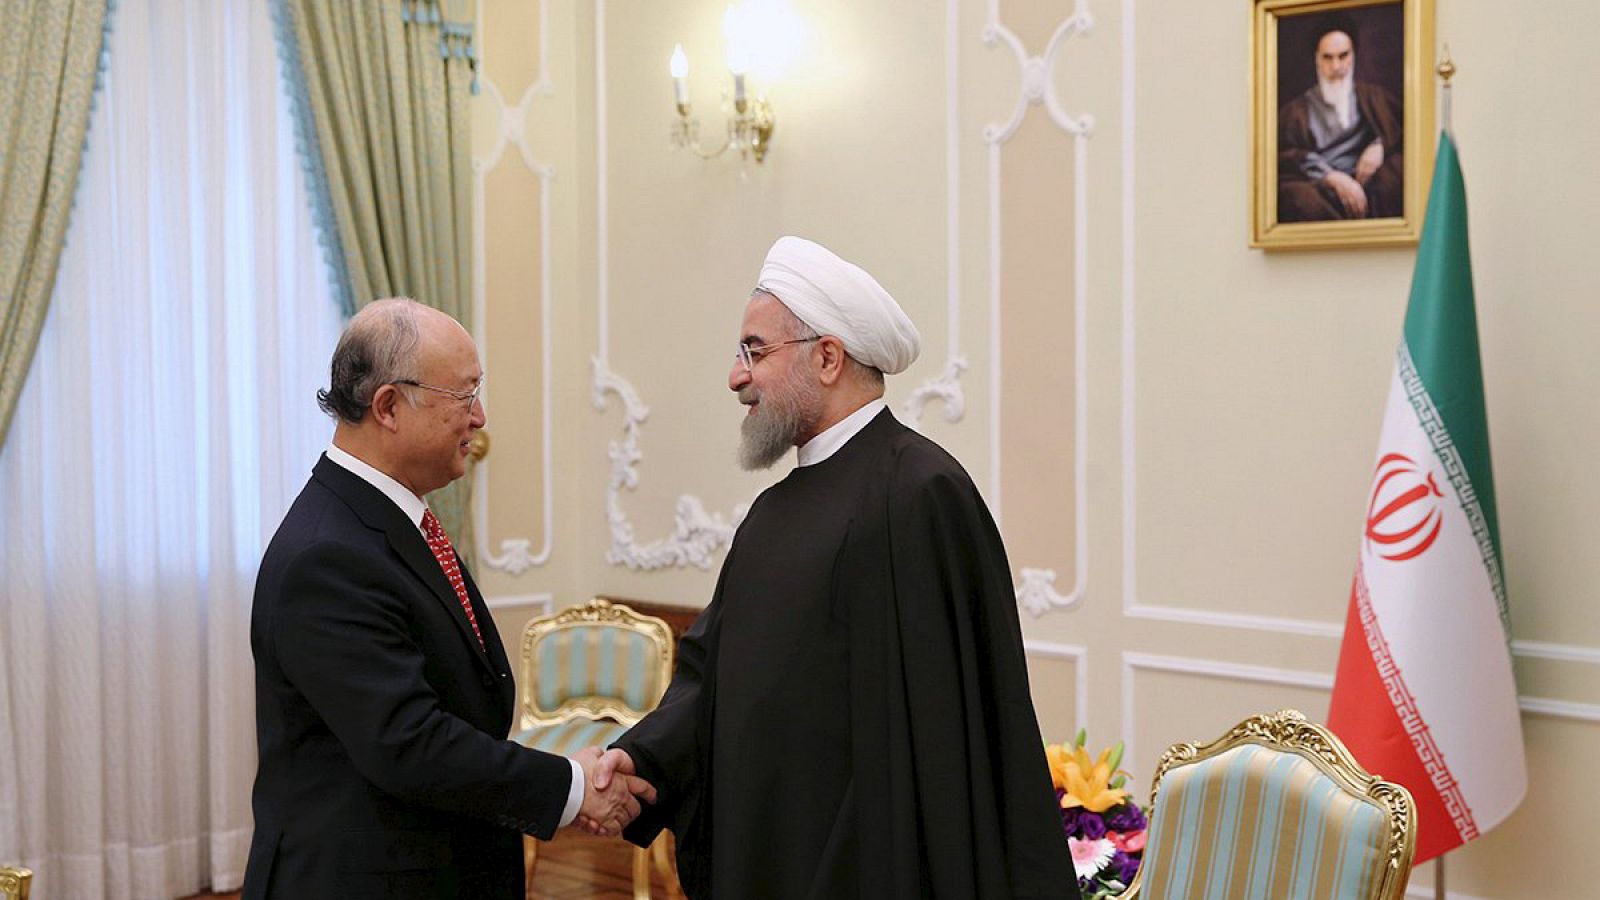 El director de la OIEA Yukiya Amano saluda al presidente iraní Rohani en Teherán